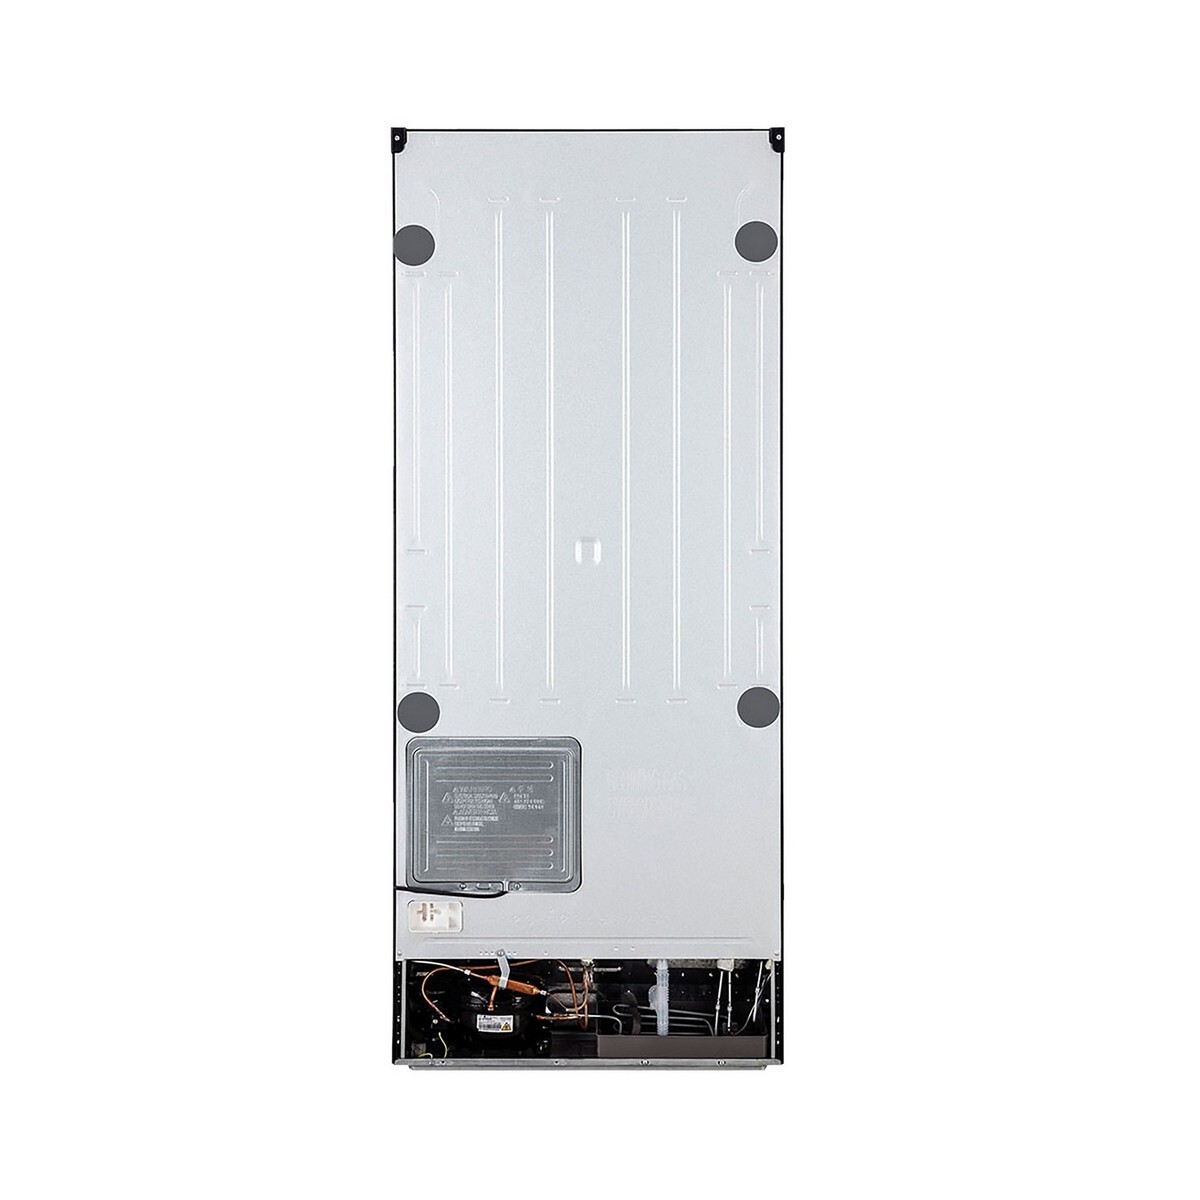 LG Frost Free Double Door Refrigerator GL-T422VESX 398L Ebony Sheen